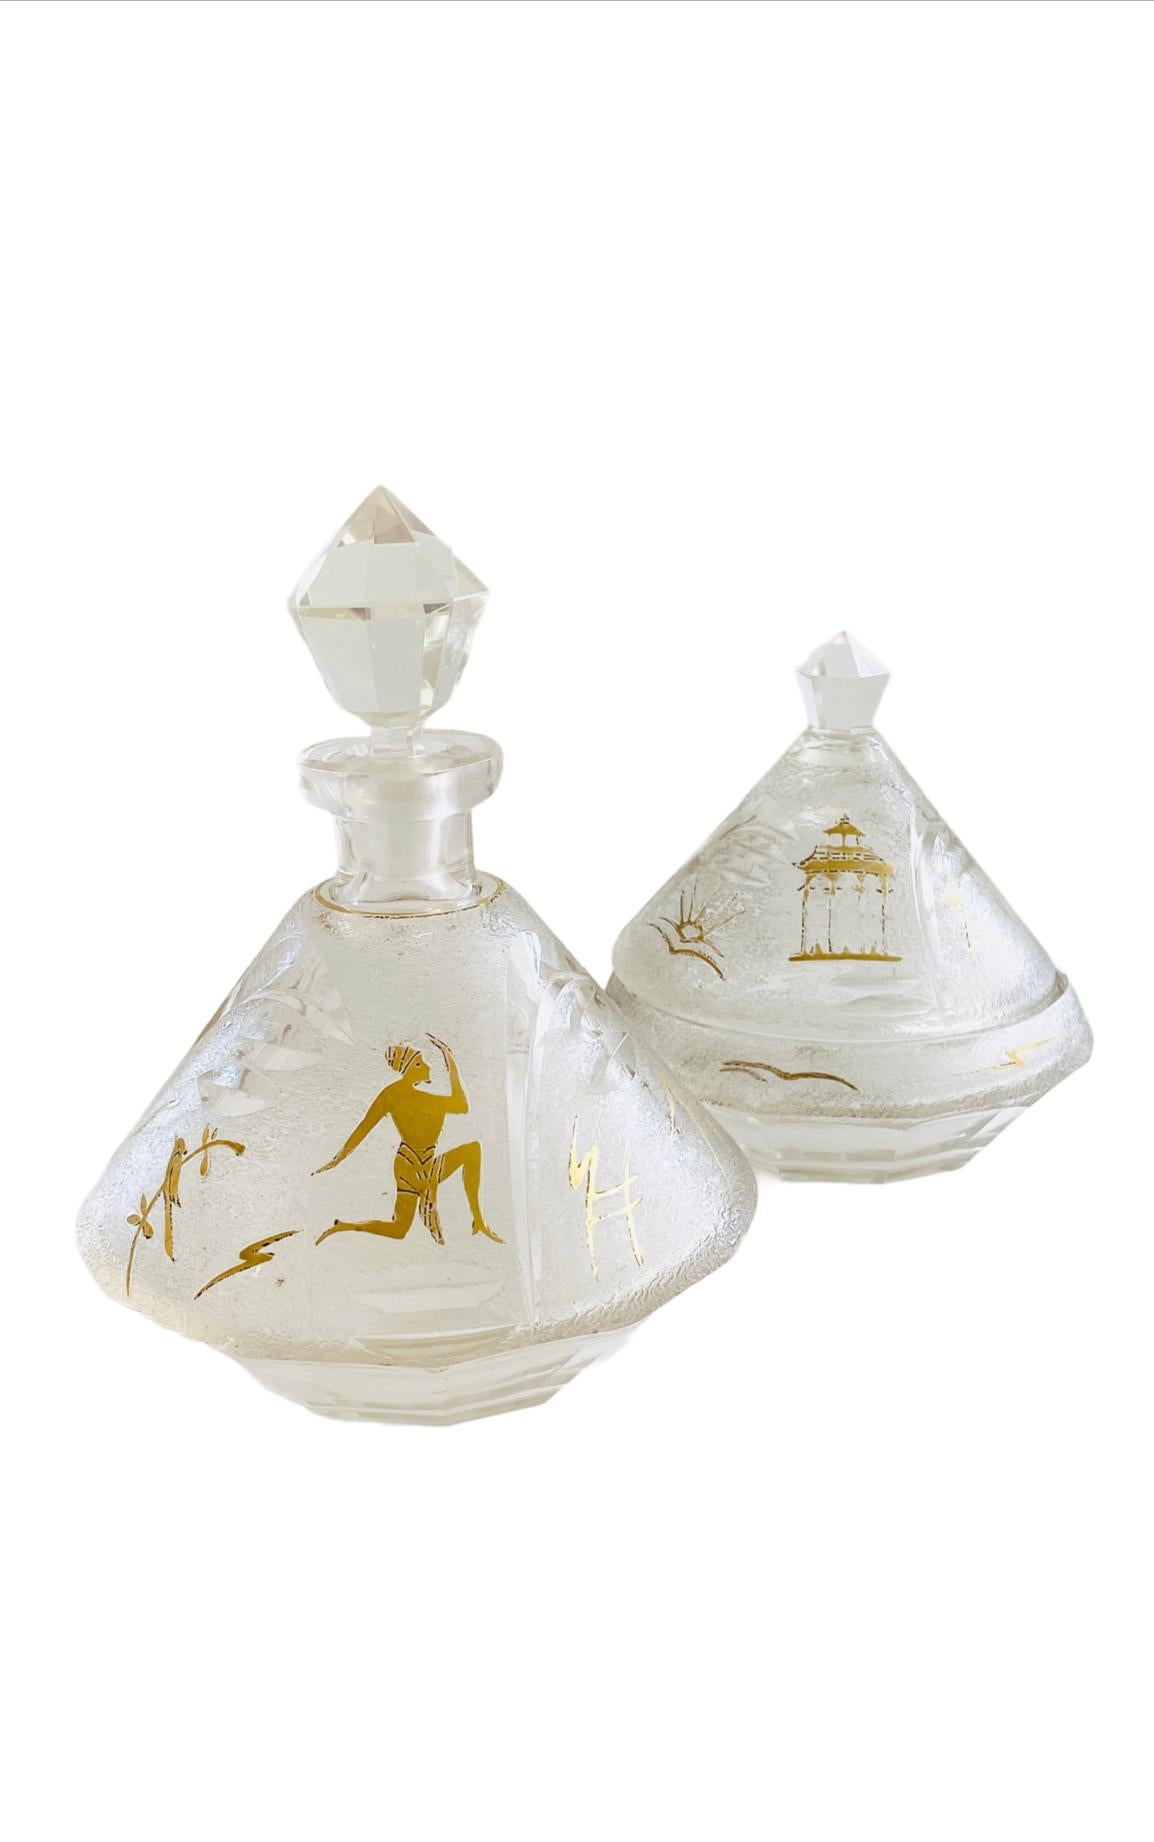 Rare coffret de parfum en cristal avec des hiéroglyphes anciens en or.

Taille : La bouteille mesure 6